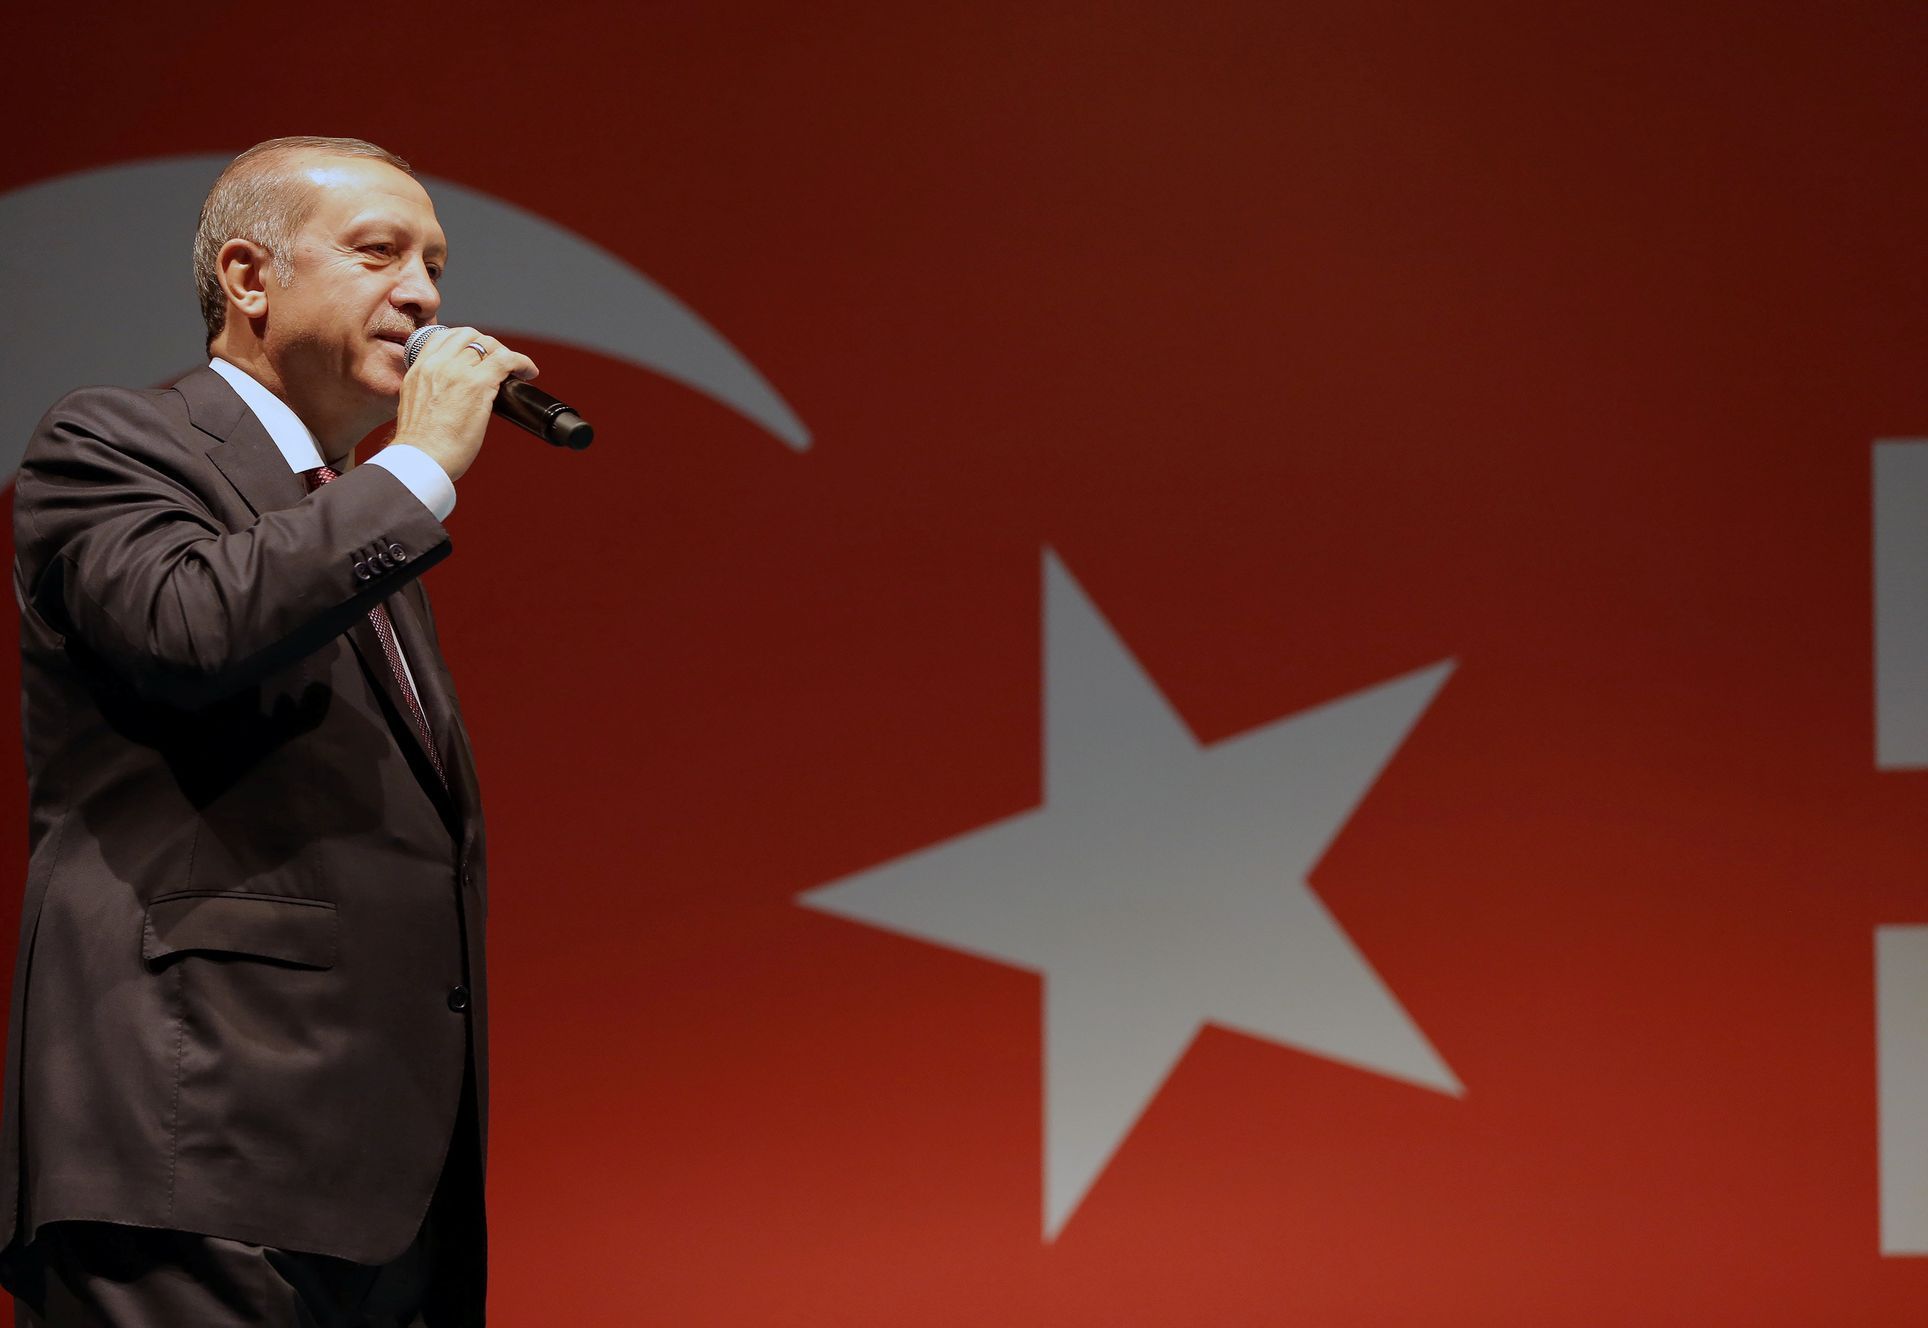 Turecký prezident Erdogan mluví ke svým příznivcům před svou rezidencí v Istanbulu